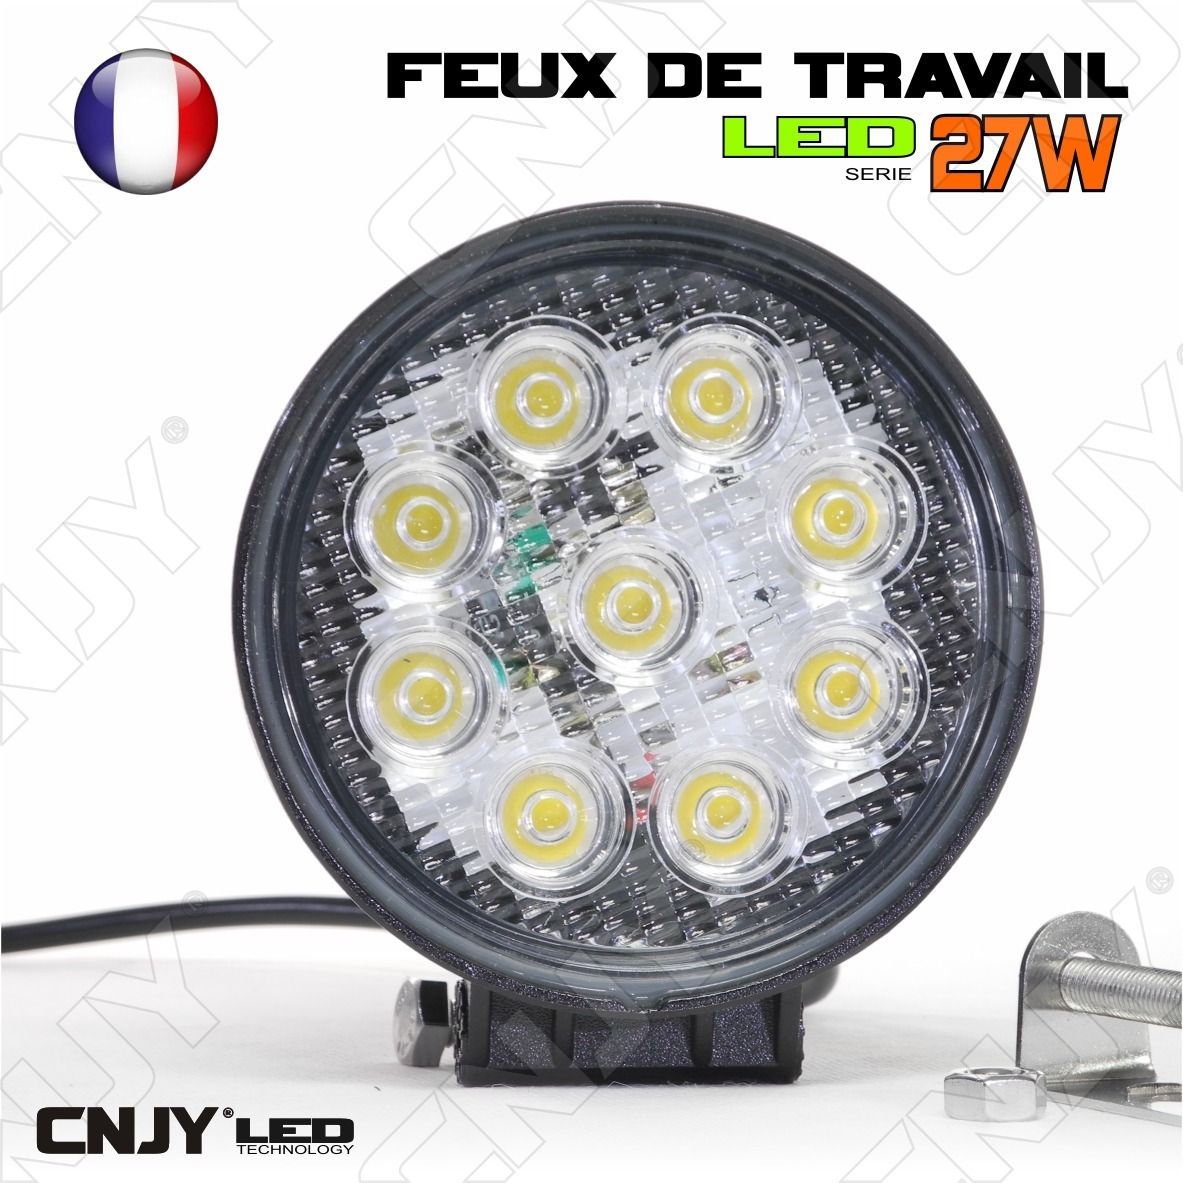 FEUX DE TRAVAIL CNJY LED 27W ROND WORKING LIGHT IP67 CAMION BATEAU 4x4 12  24V à 26,95 € chez